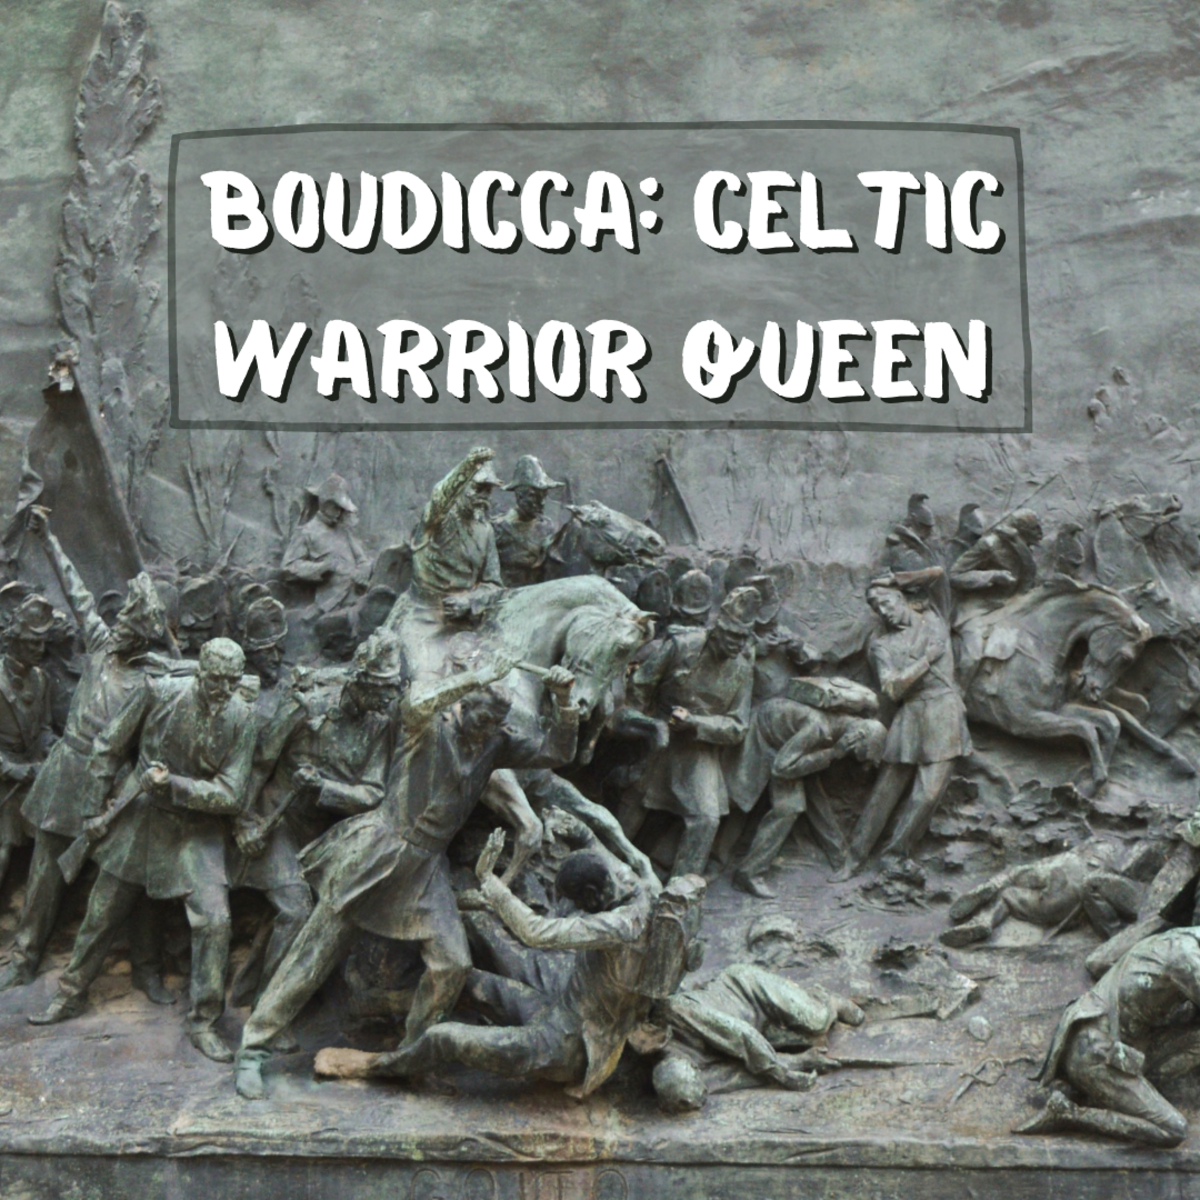 Boudicca, the Celtic Warrior Queen